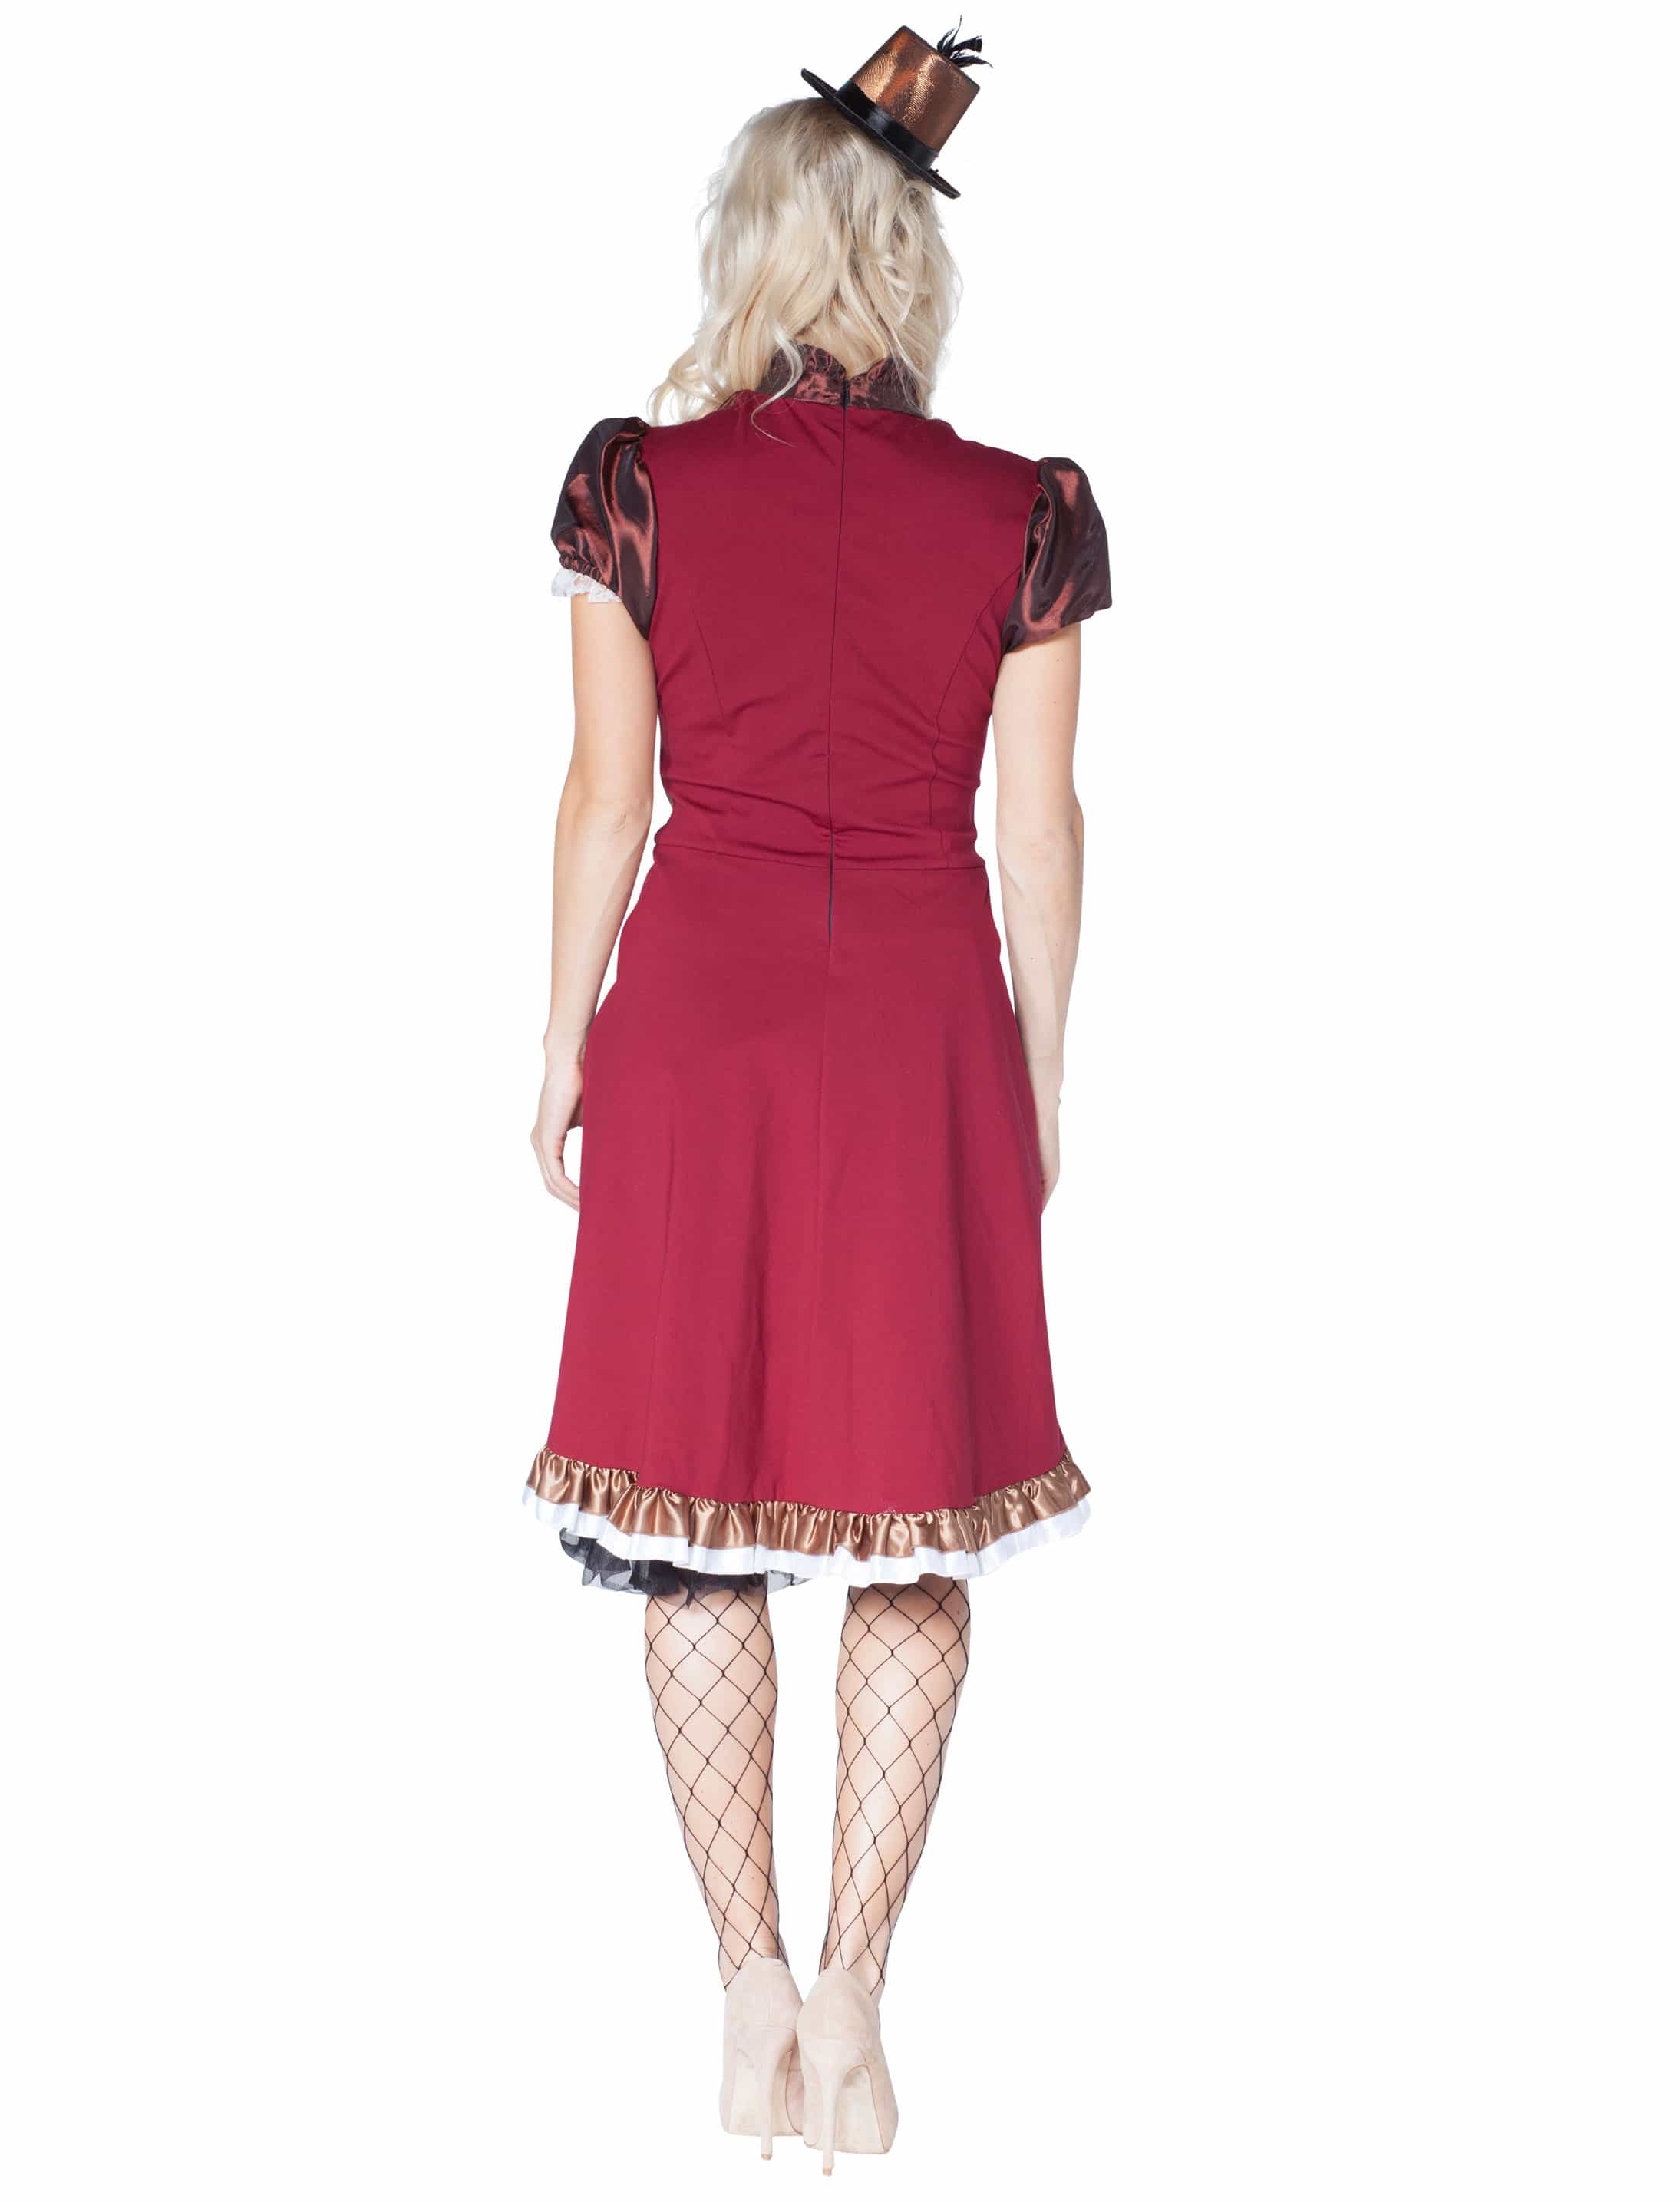 Kleid Steampunk braun/rot 42